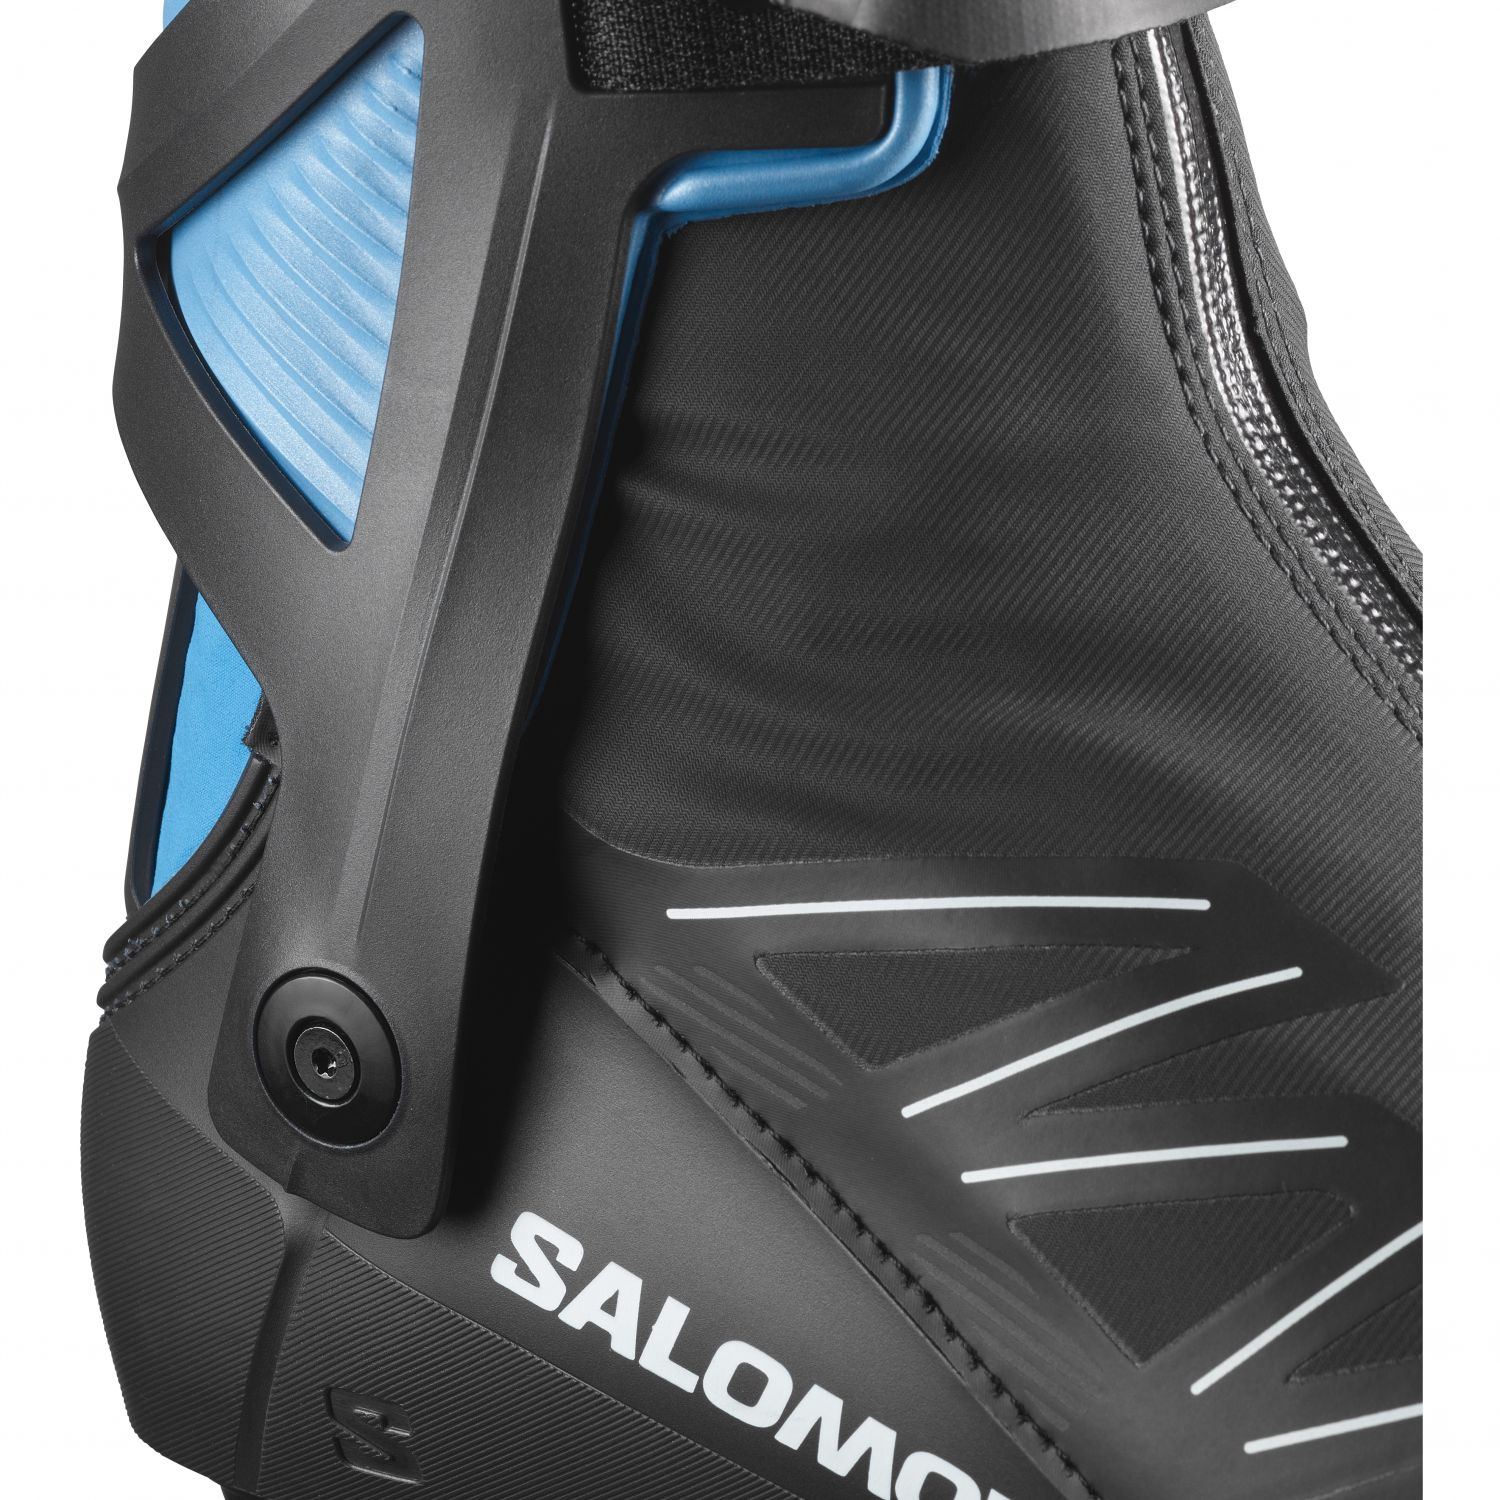 Salomon RS8 Prolink, langrendsstøvler, herre, mørkeblå